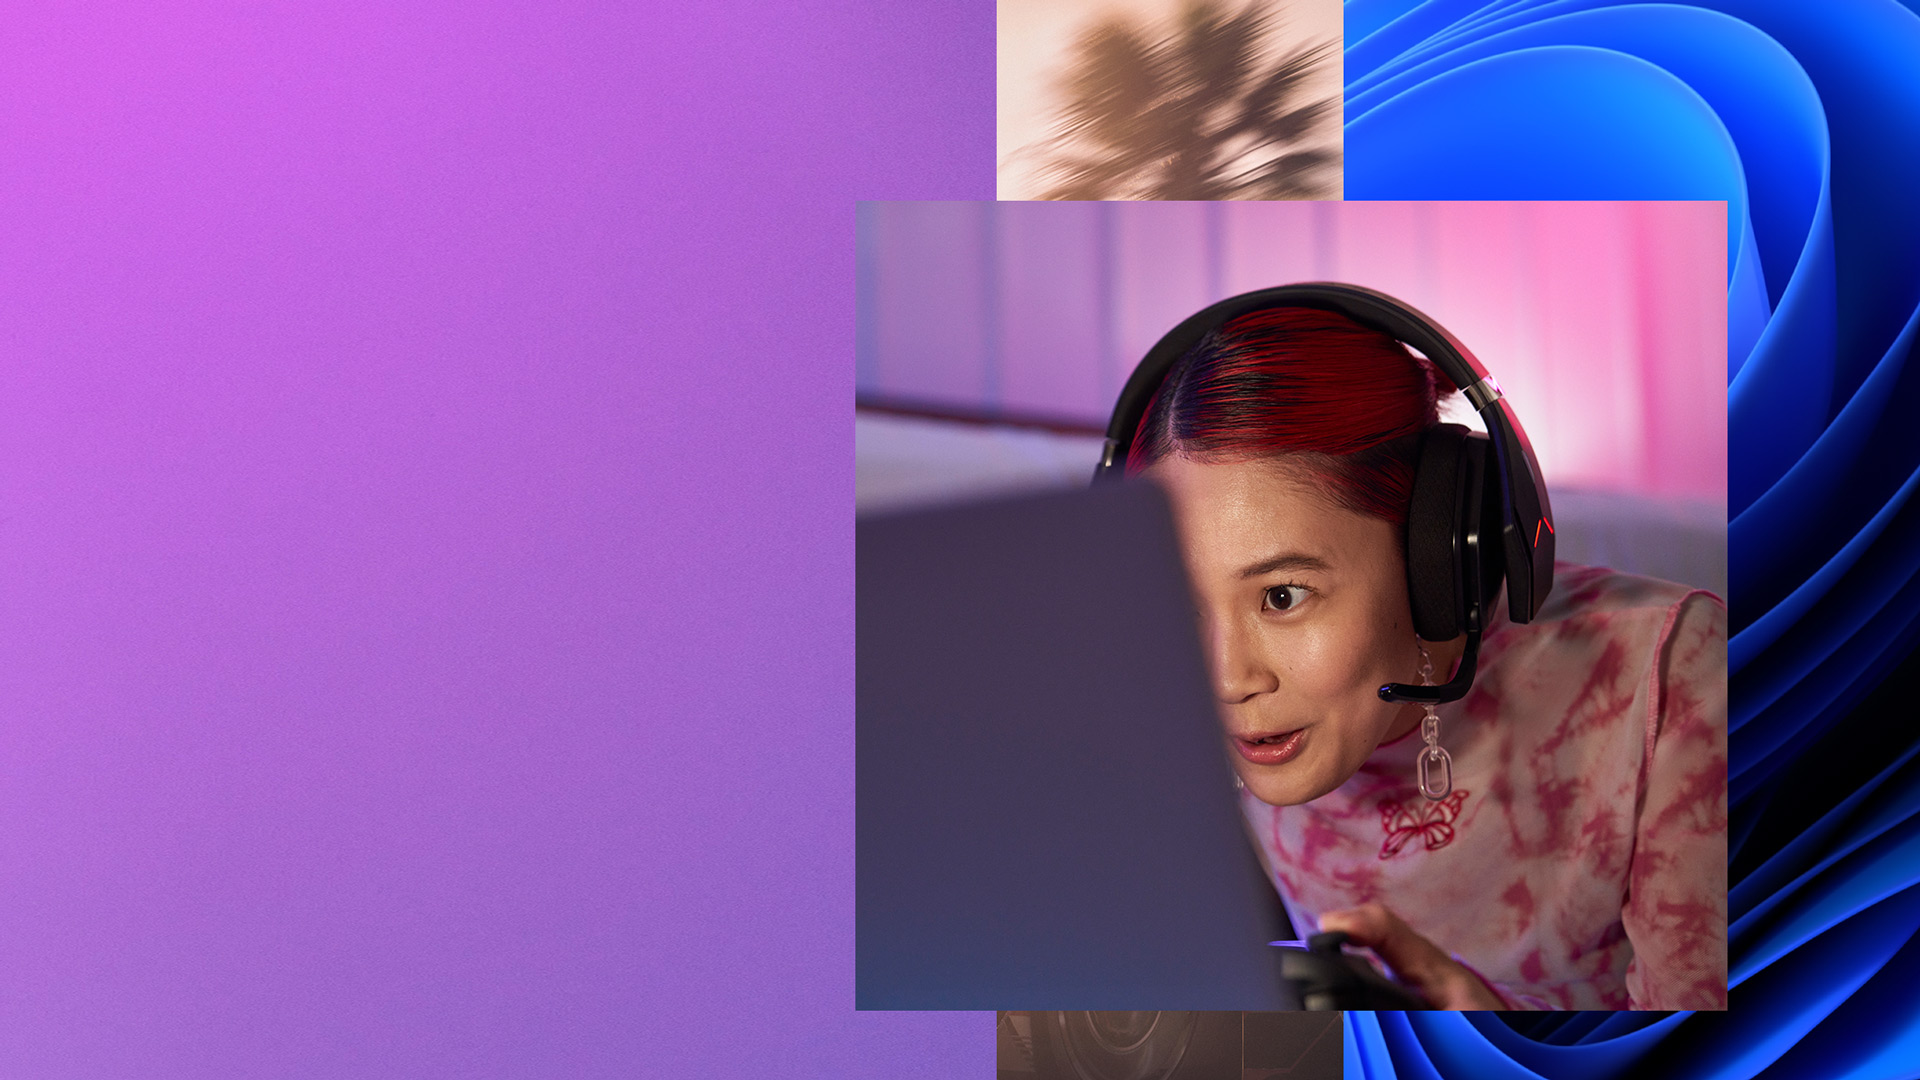 Κορίτσι που φοράει ακουστικά και κρατά ένα χειριστήριο στα χέρια της ενώ κοιτάζει την οθόνη του υπολογιστή